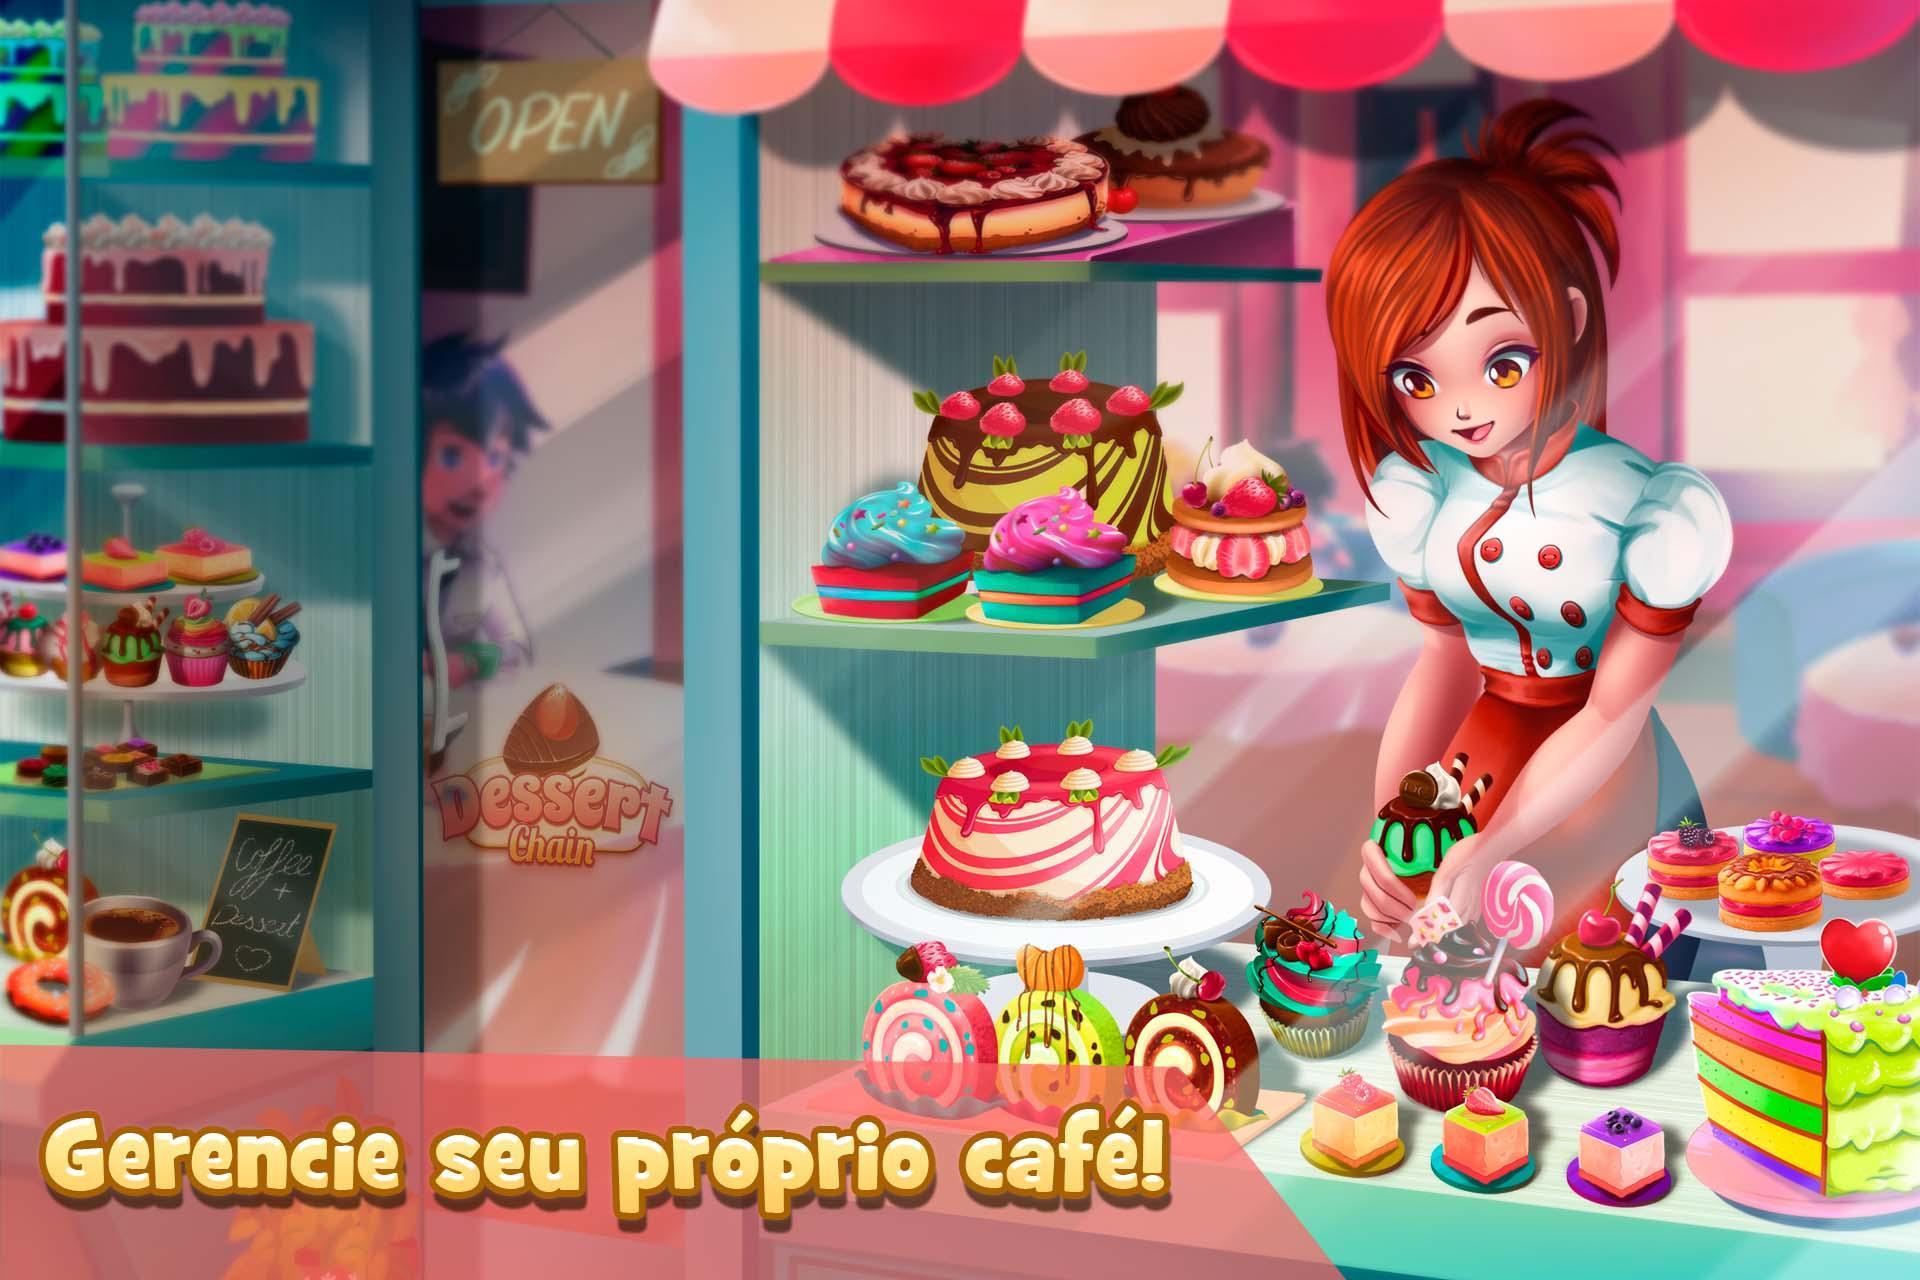 Screenshot 1 of Garçonete Café & Chefe Padaria 0.8.29